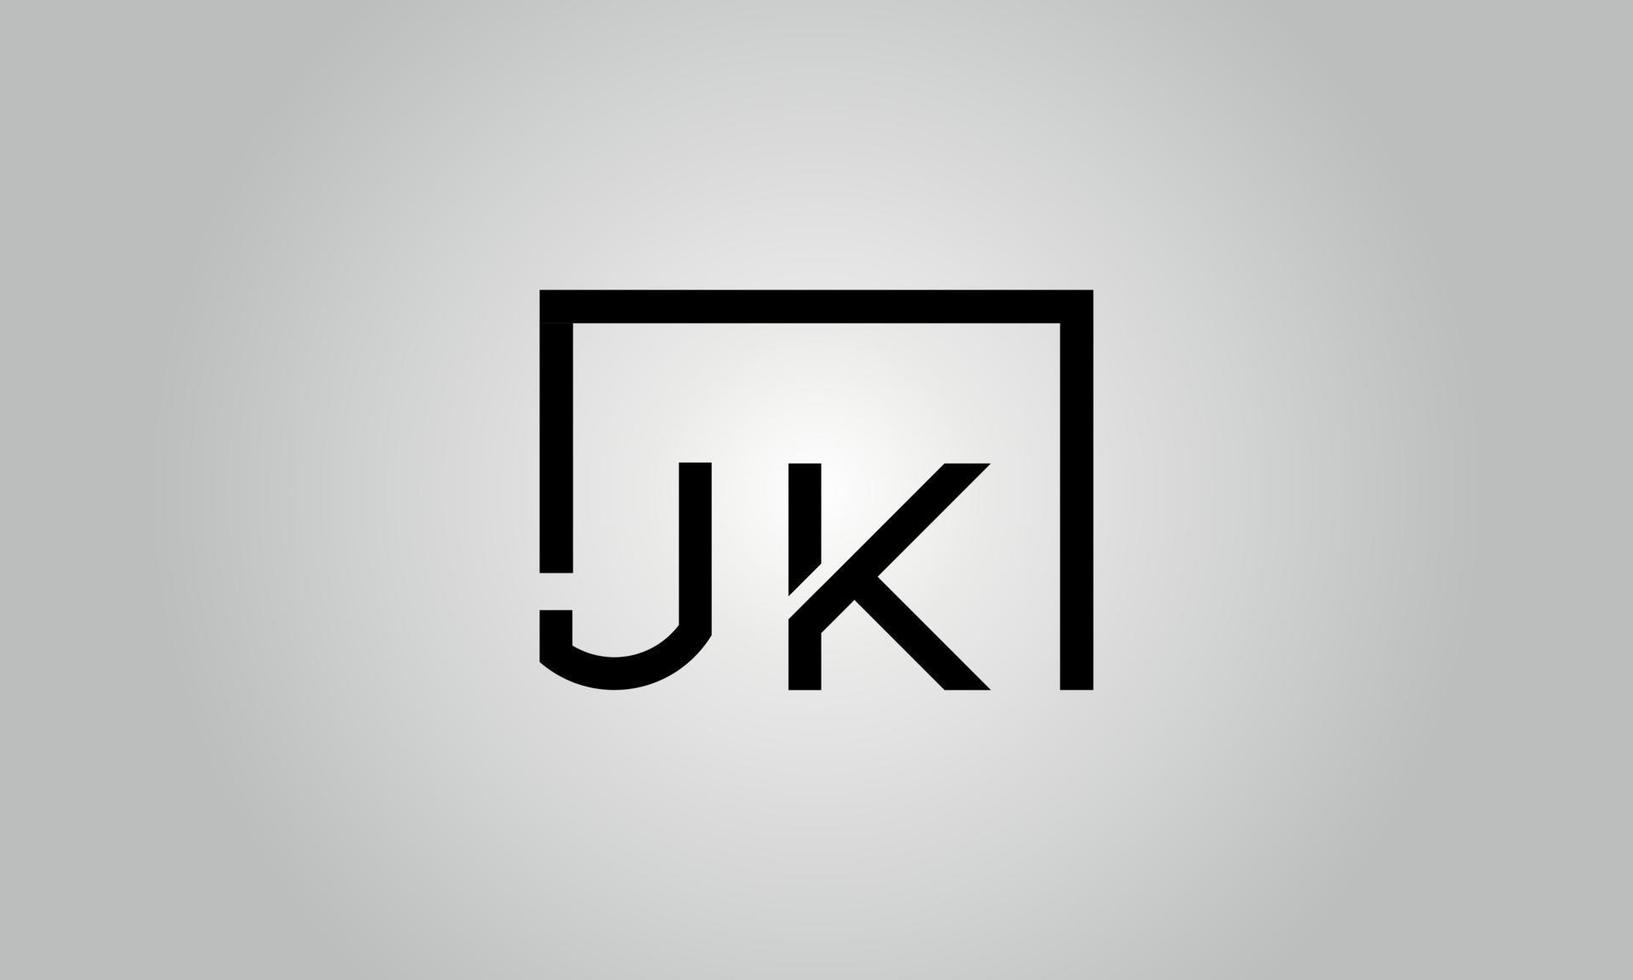 création de logo lettre jk. logo jk avec forme carrée dans le modèle vectoriel gratuit de couleurs noires.